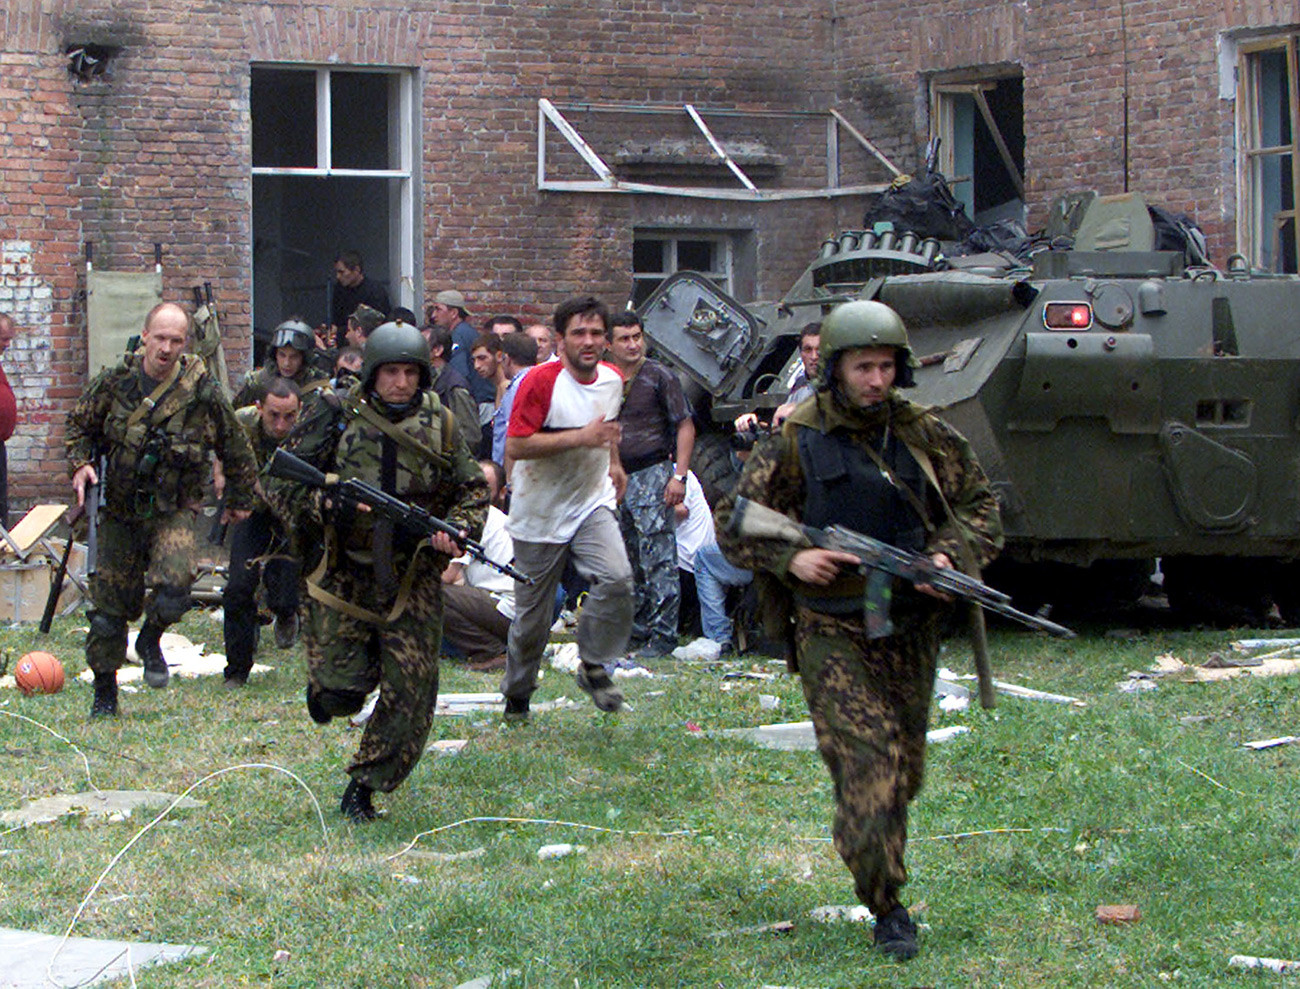 Террористы в школе 2004. Беслан 1 сентября 2004 штурм. Беслан, сентябрь 2004 спецназ. Беслан теракт в школе штурм.